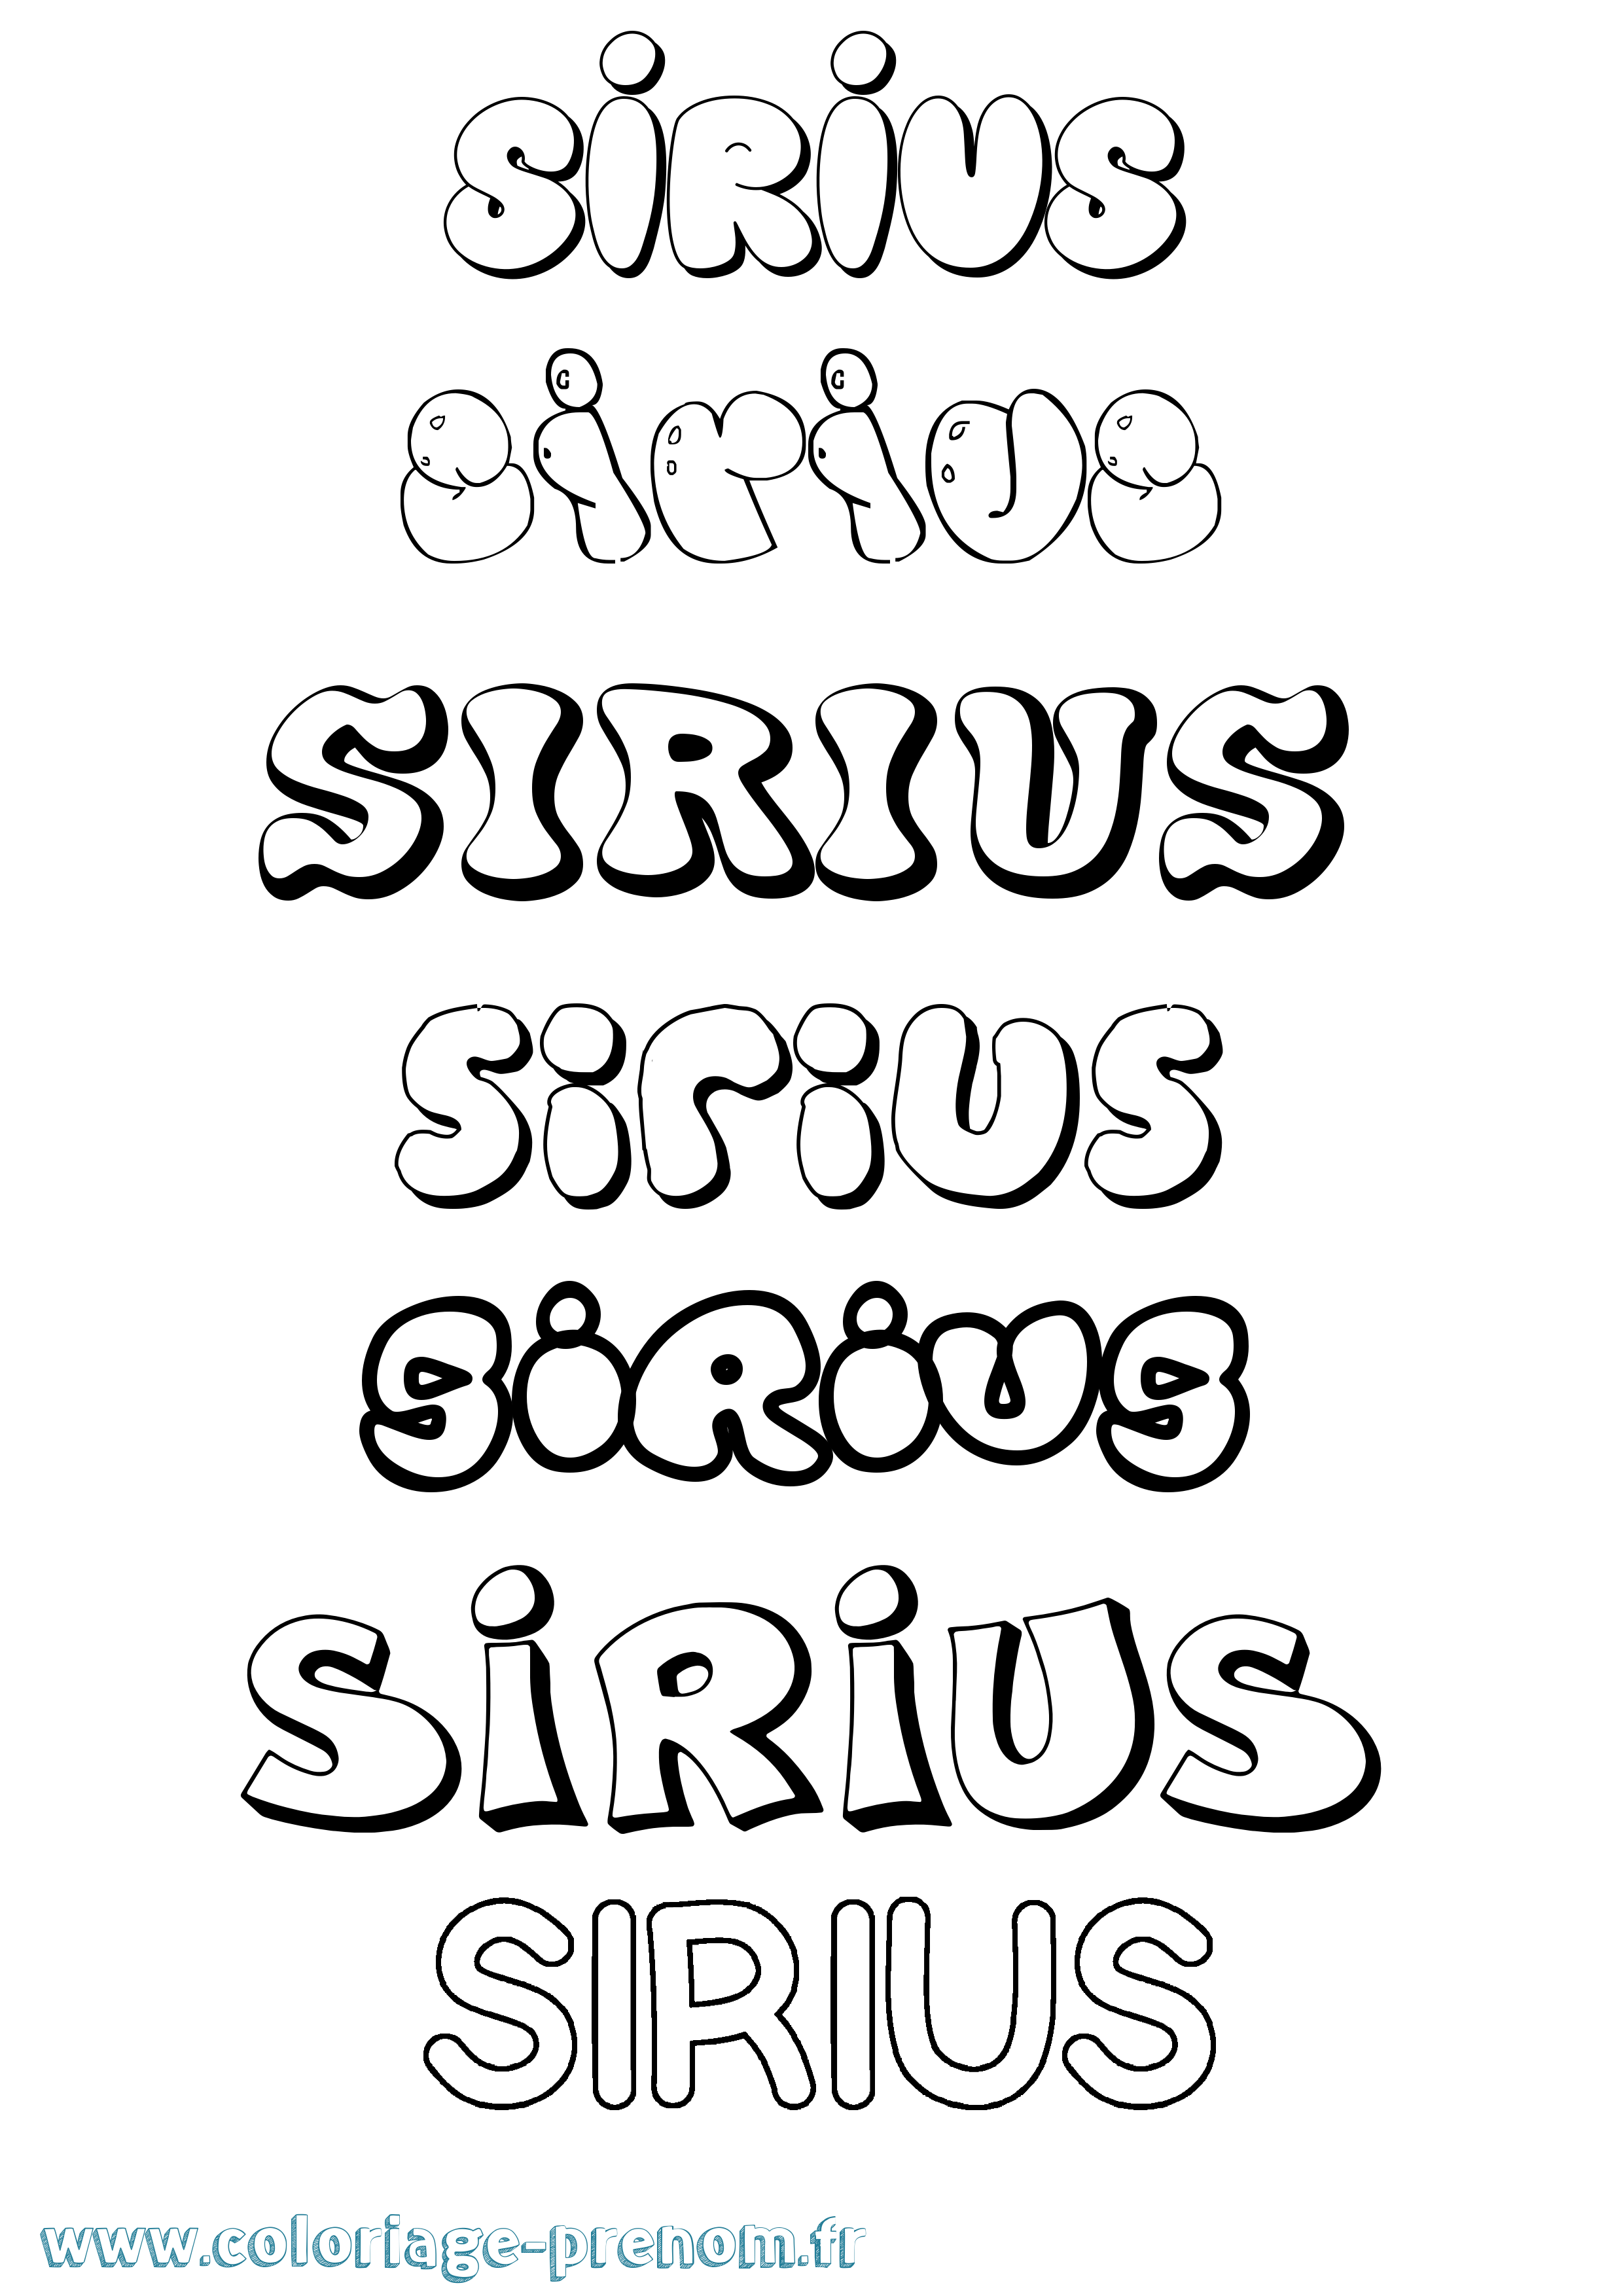 Coloriage prénom Sirius Bubble